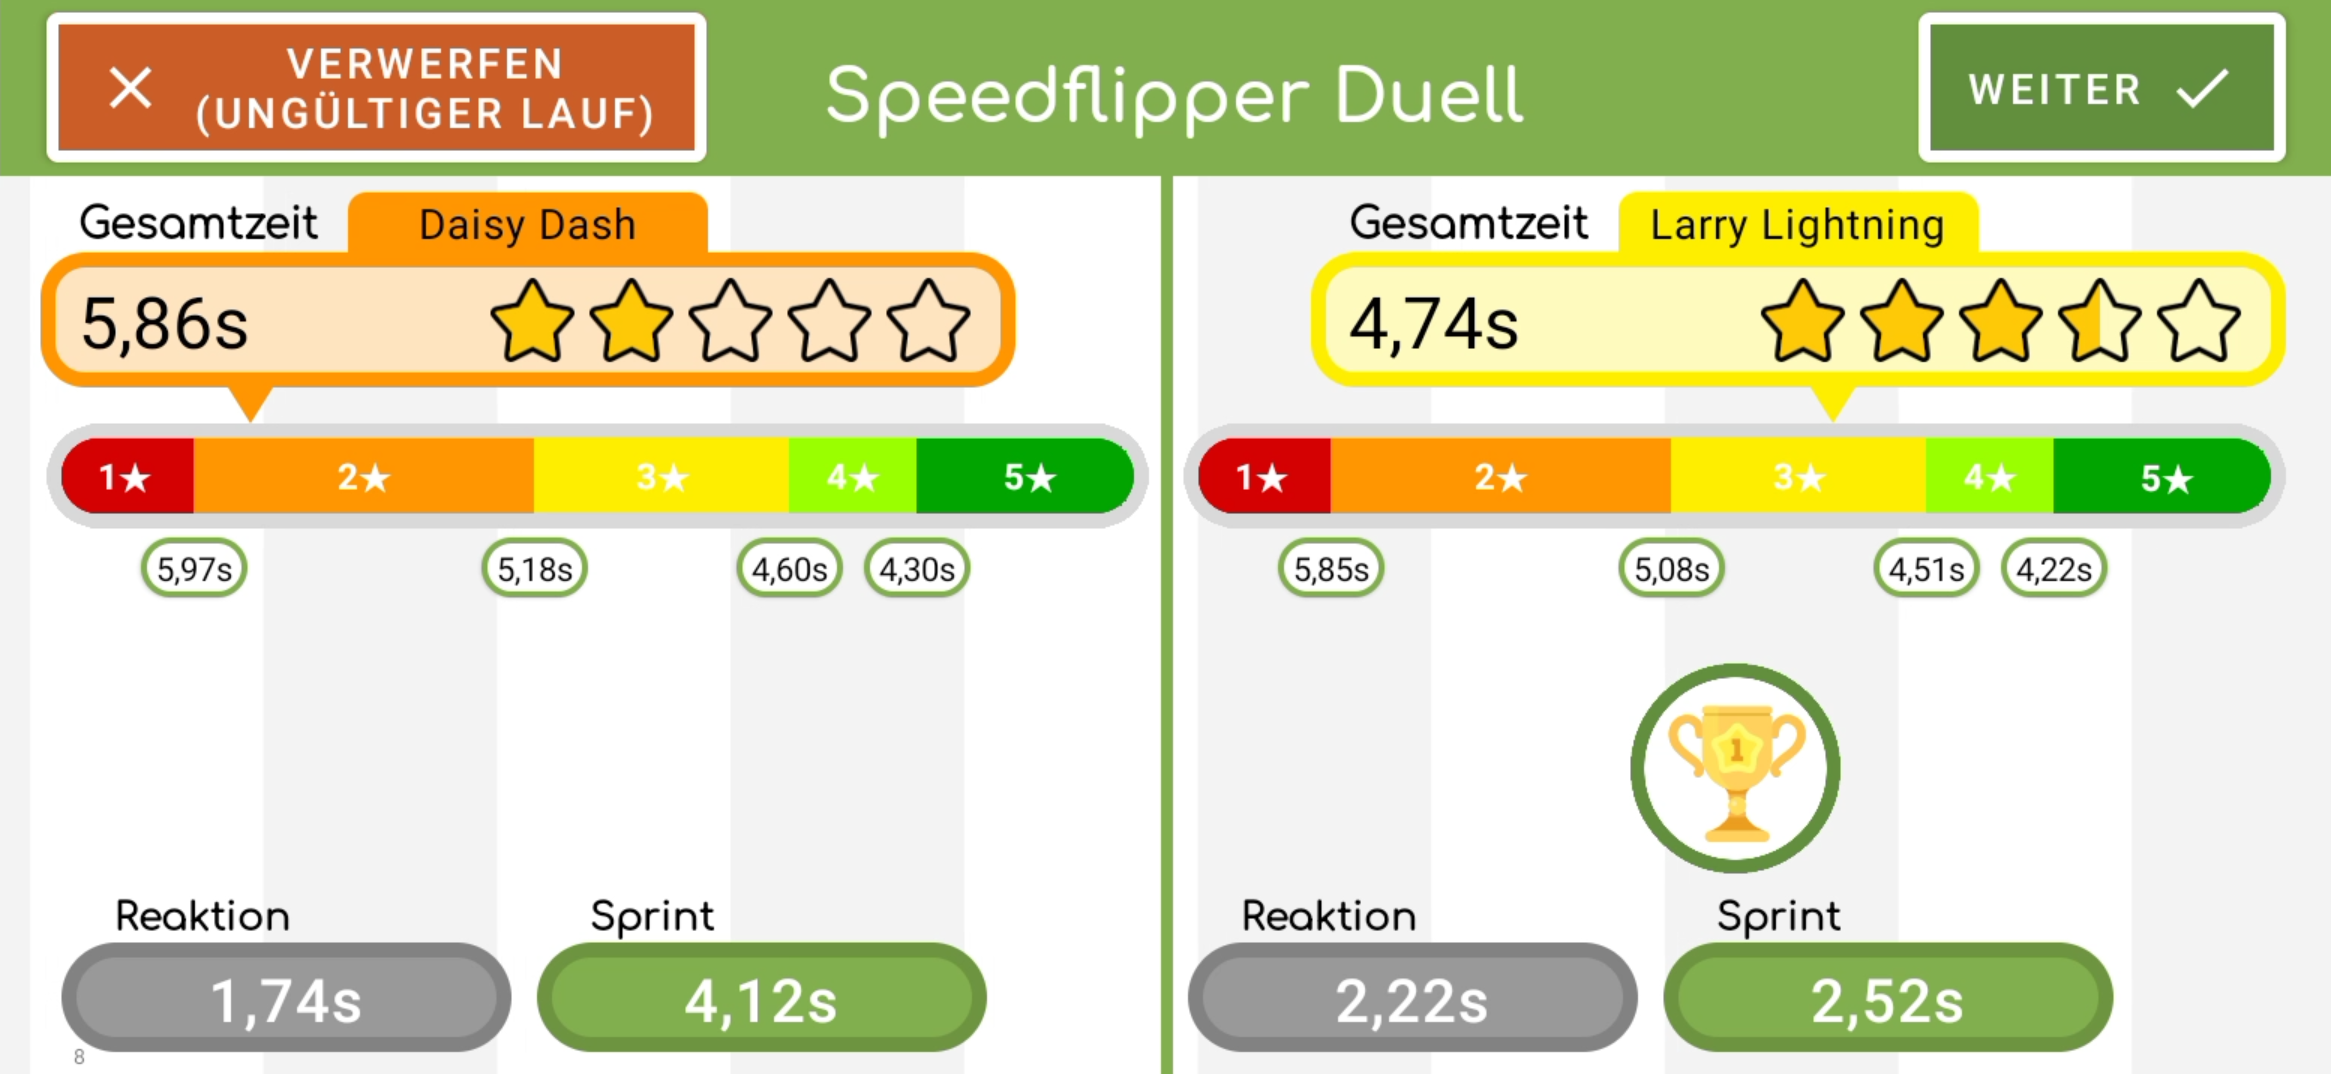 Speedflipper Duell Auswertung